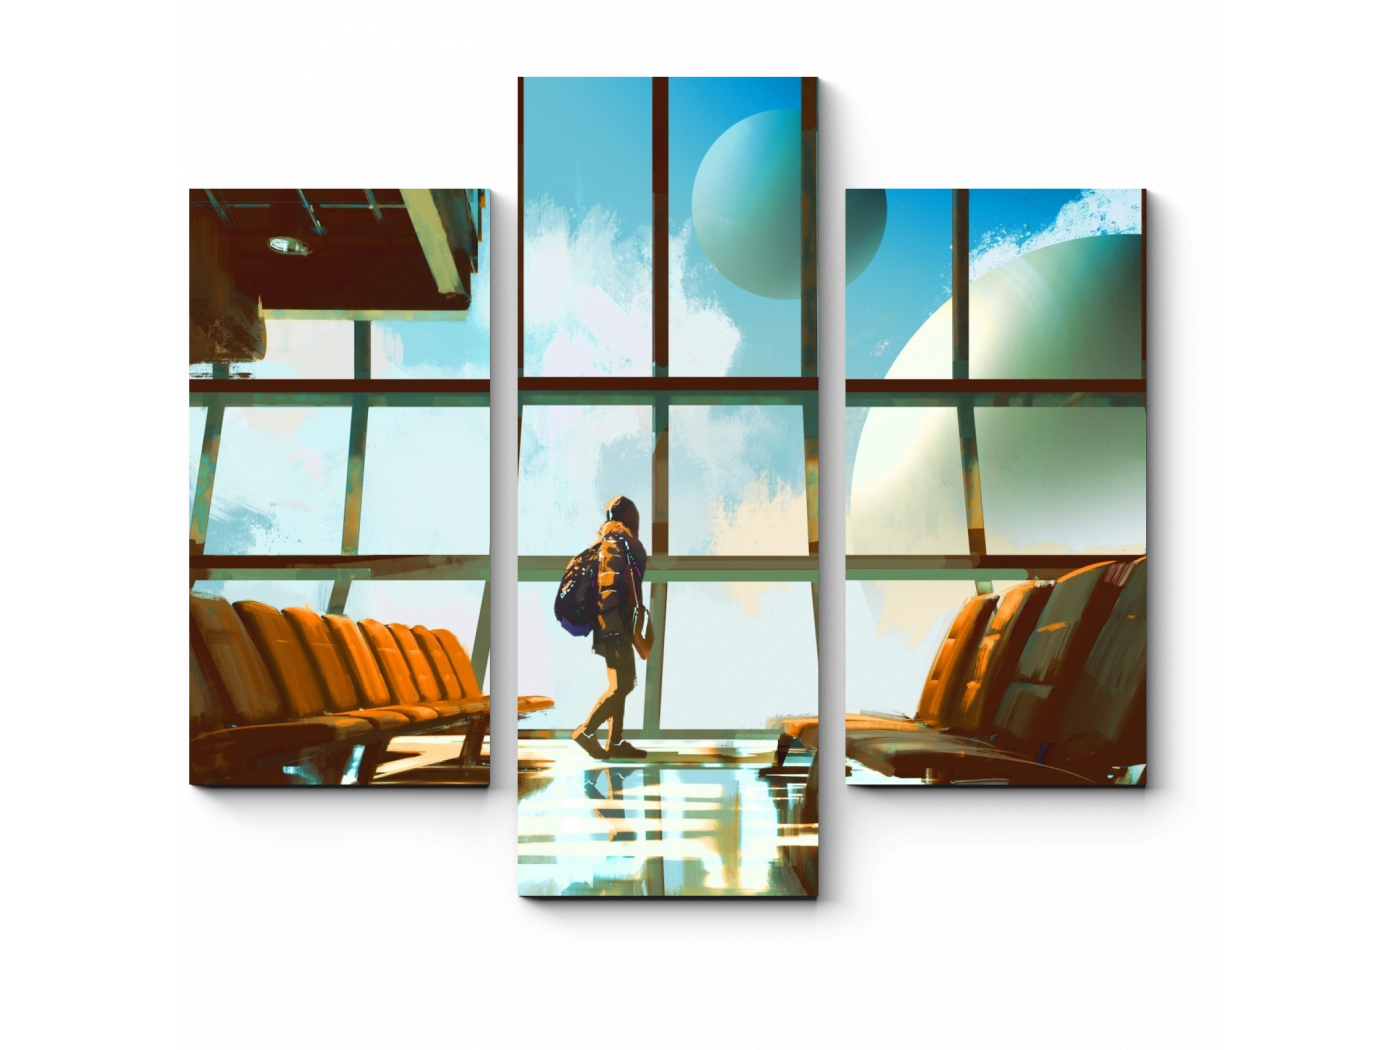 

Модульная картина Picsis, Планеты в окнах аэропорта (20x20)